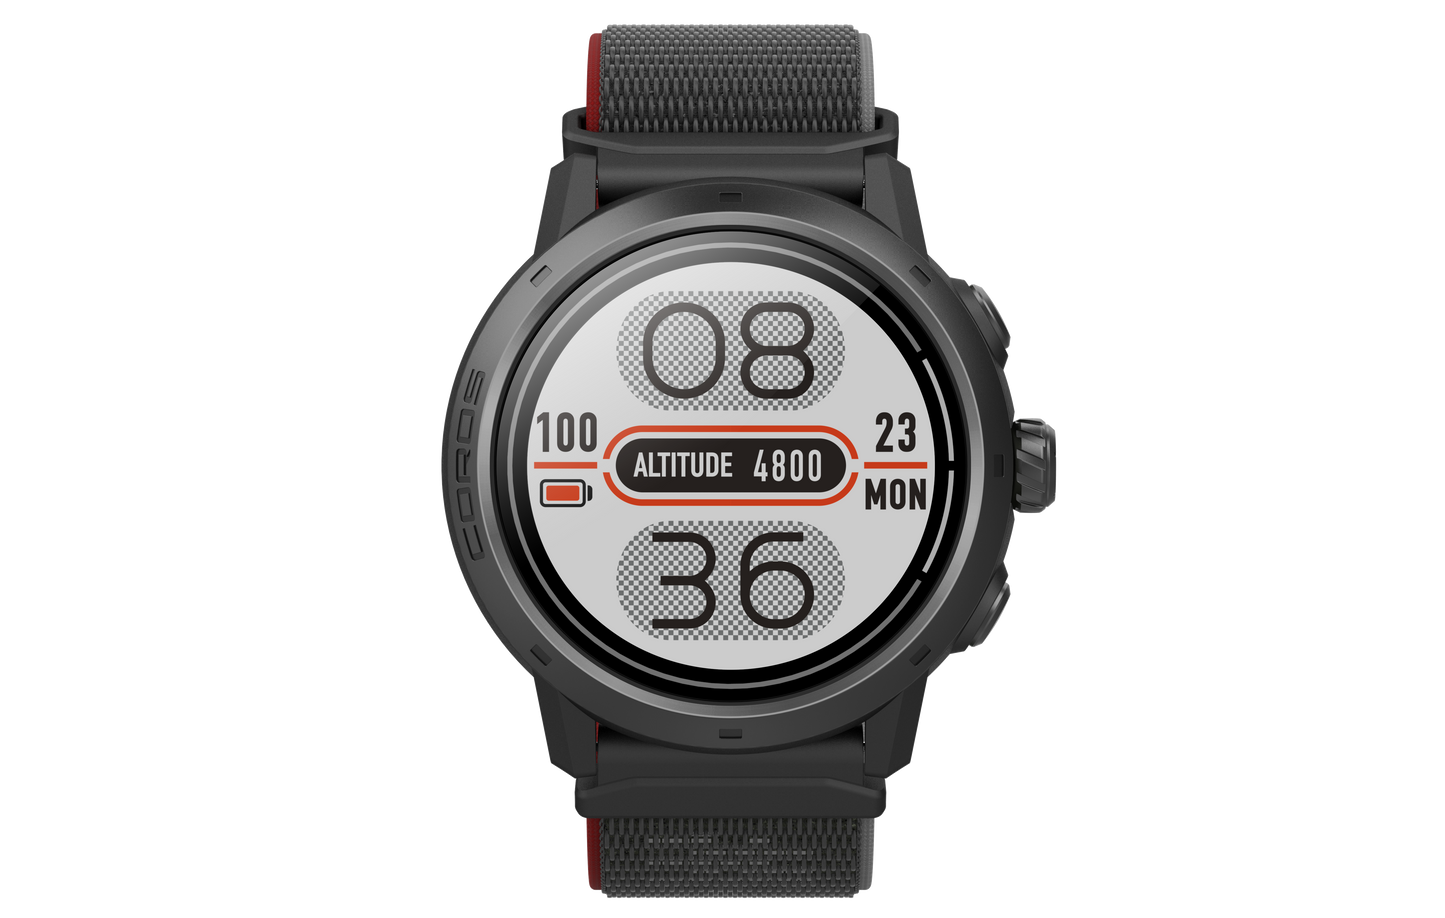 COROS - APEX 2 Pro - GPS Outdoor Watch - Black